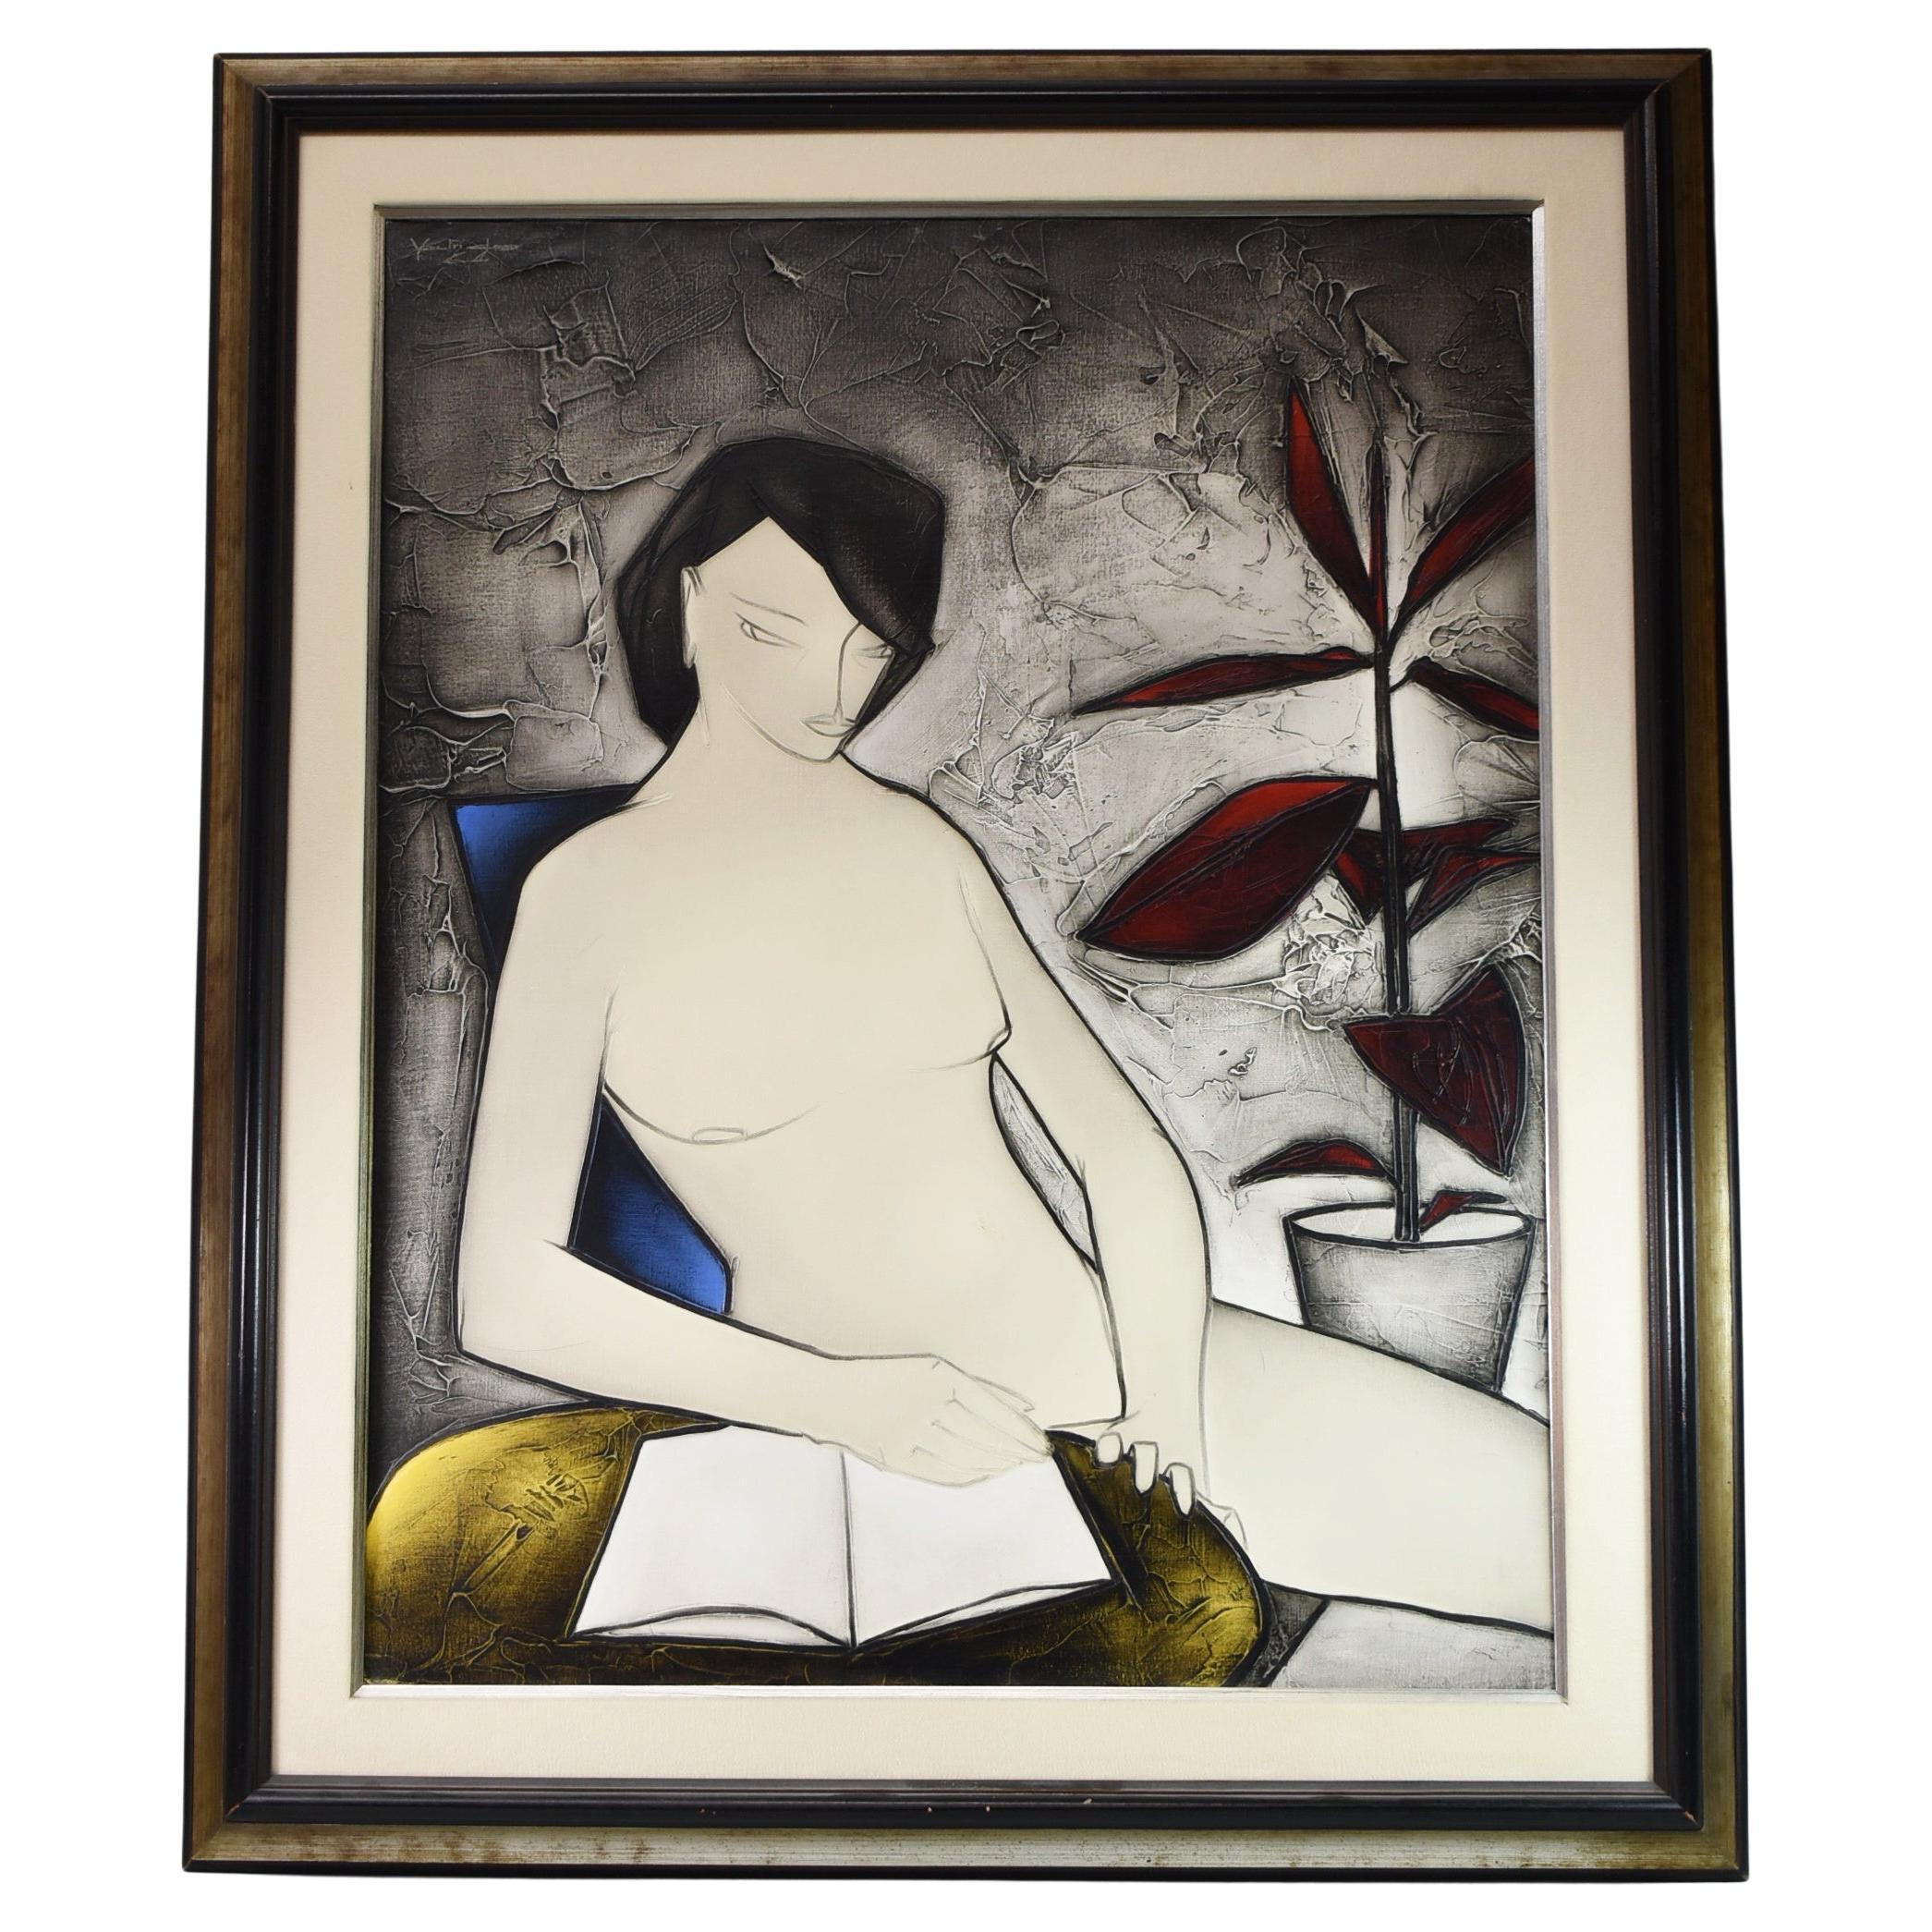 Modernistisches Gemälde der französischen Künstlerin George Yatrides, weiblicher Akt, um 1964